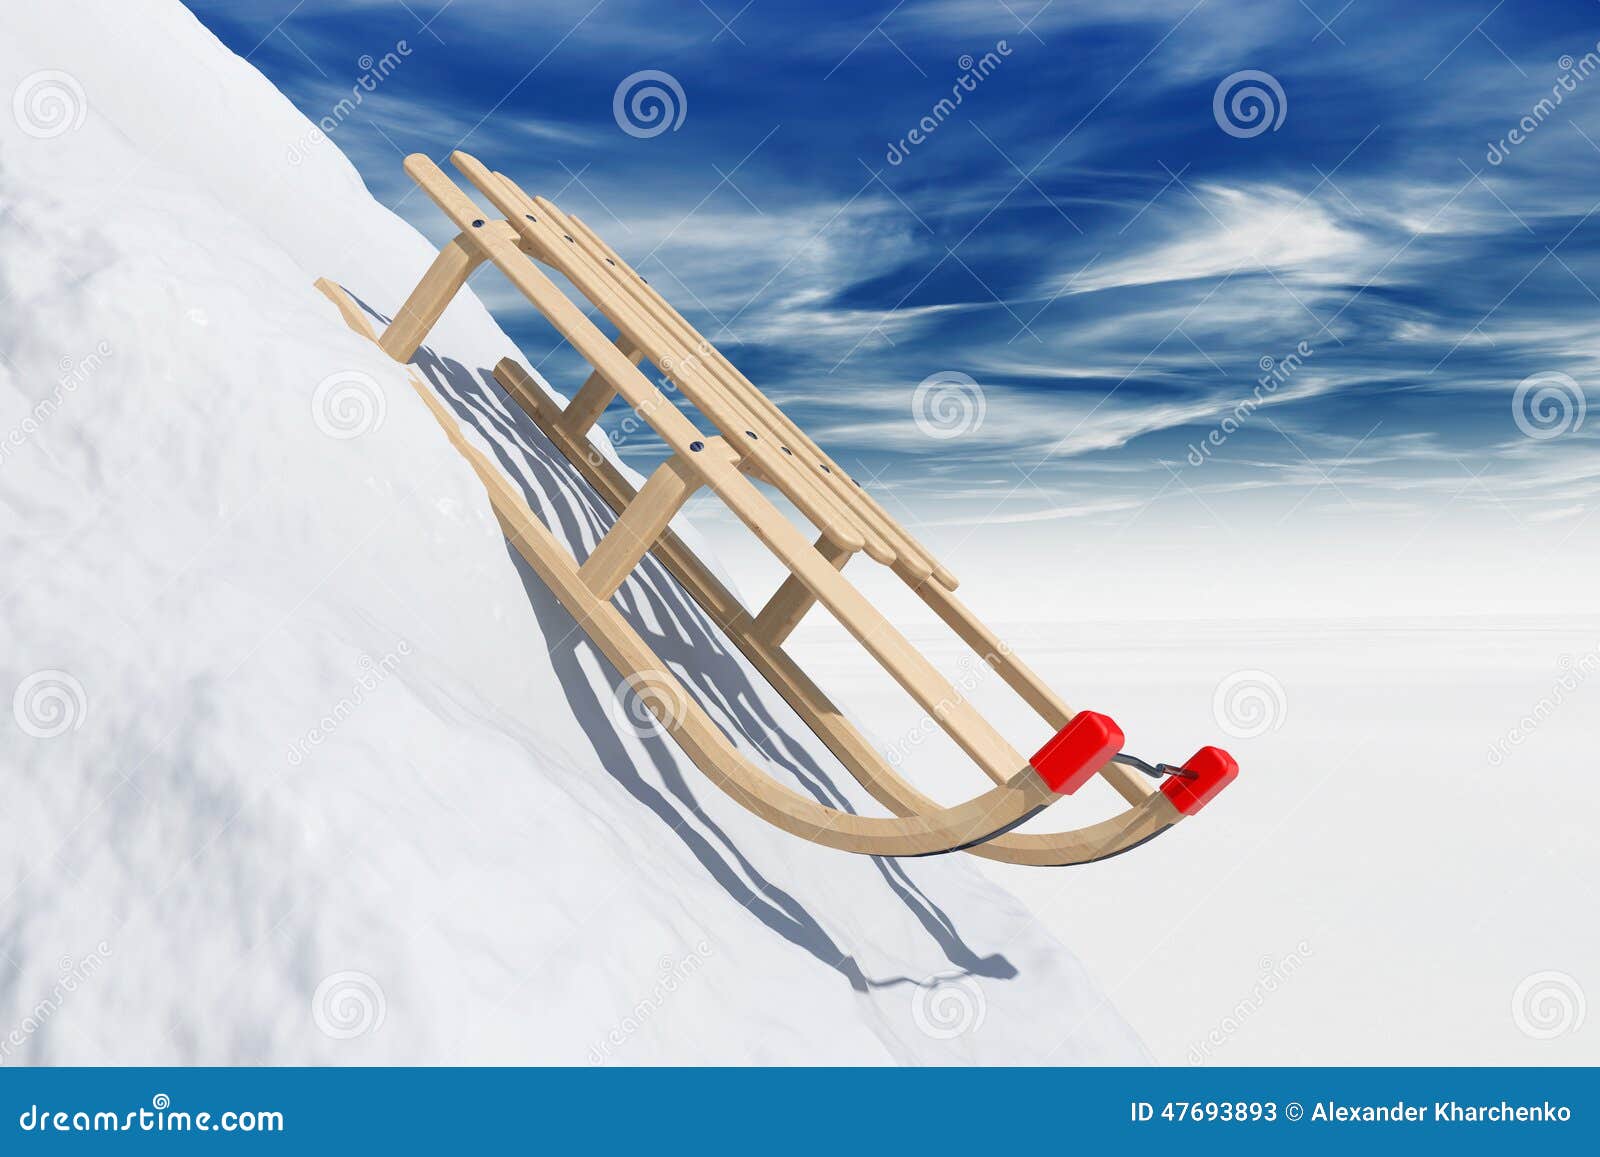 Correspondentie Liever Verslijten Glijdende slee in sneeuw stock afbeelding. Image of dynamisch - 47693893